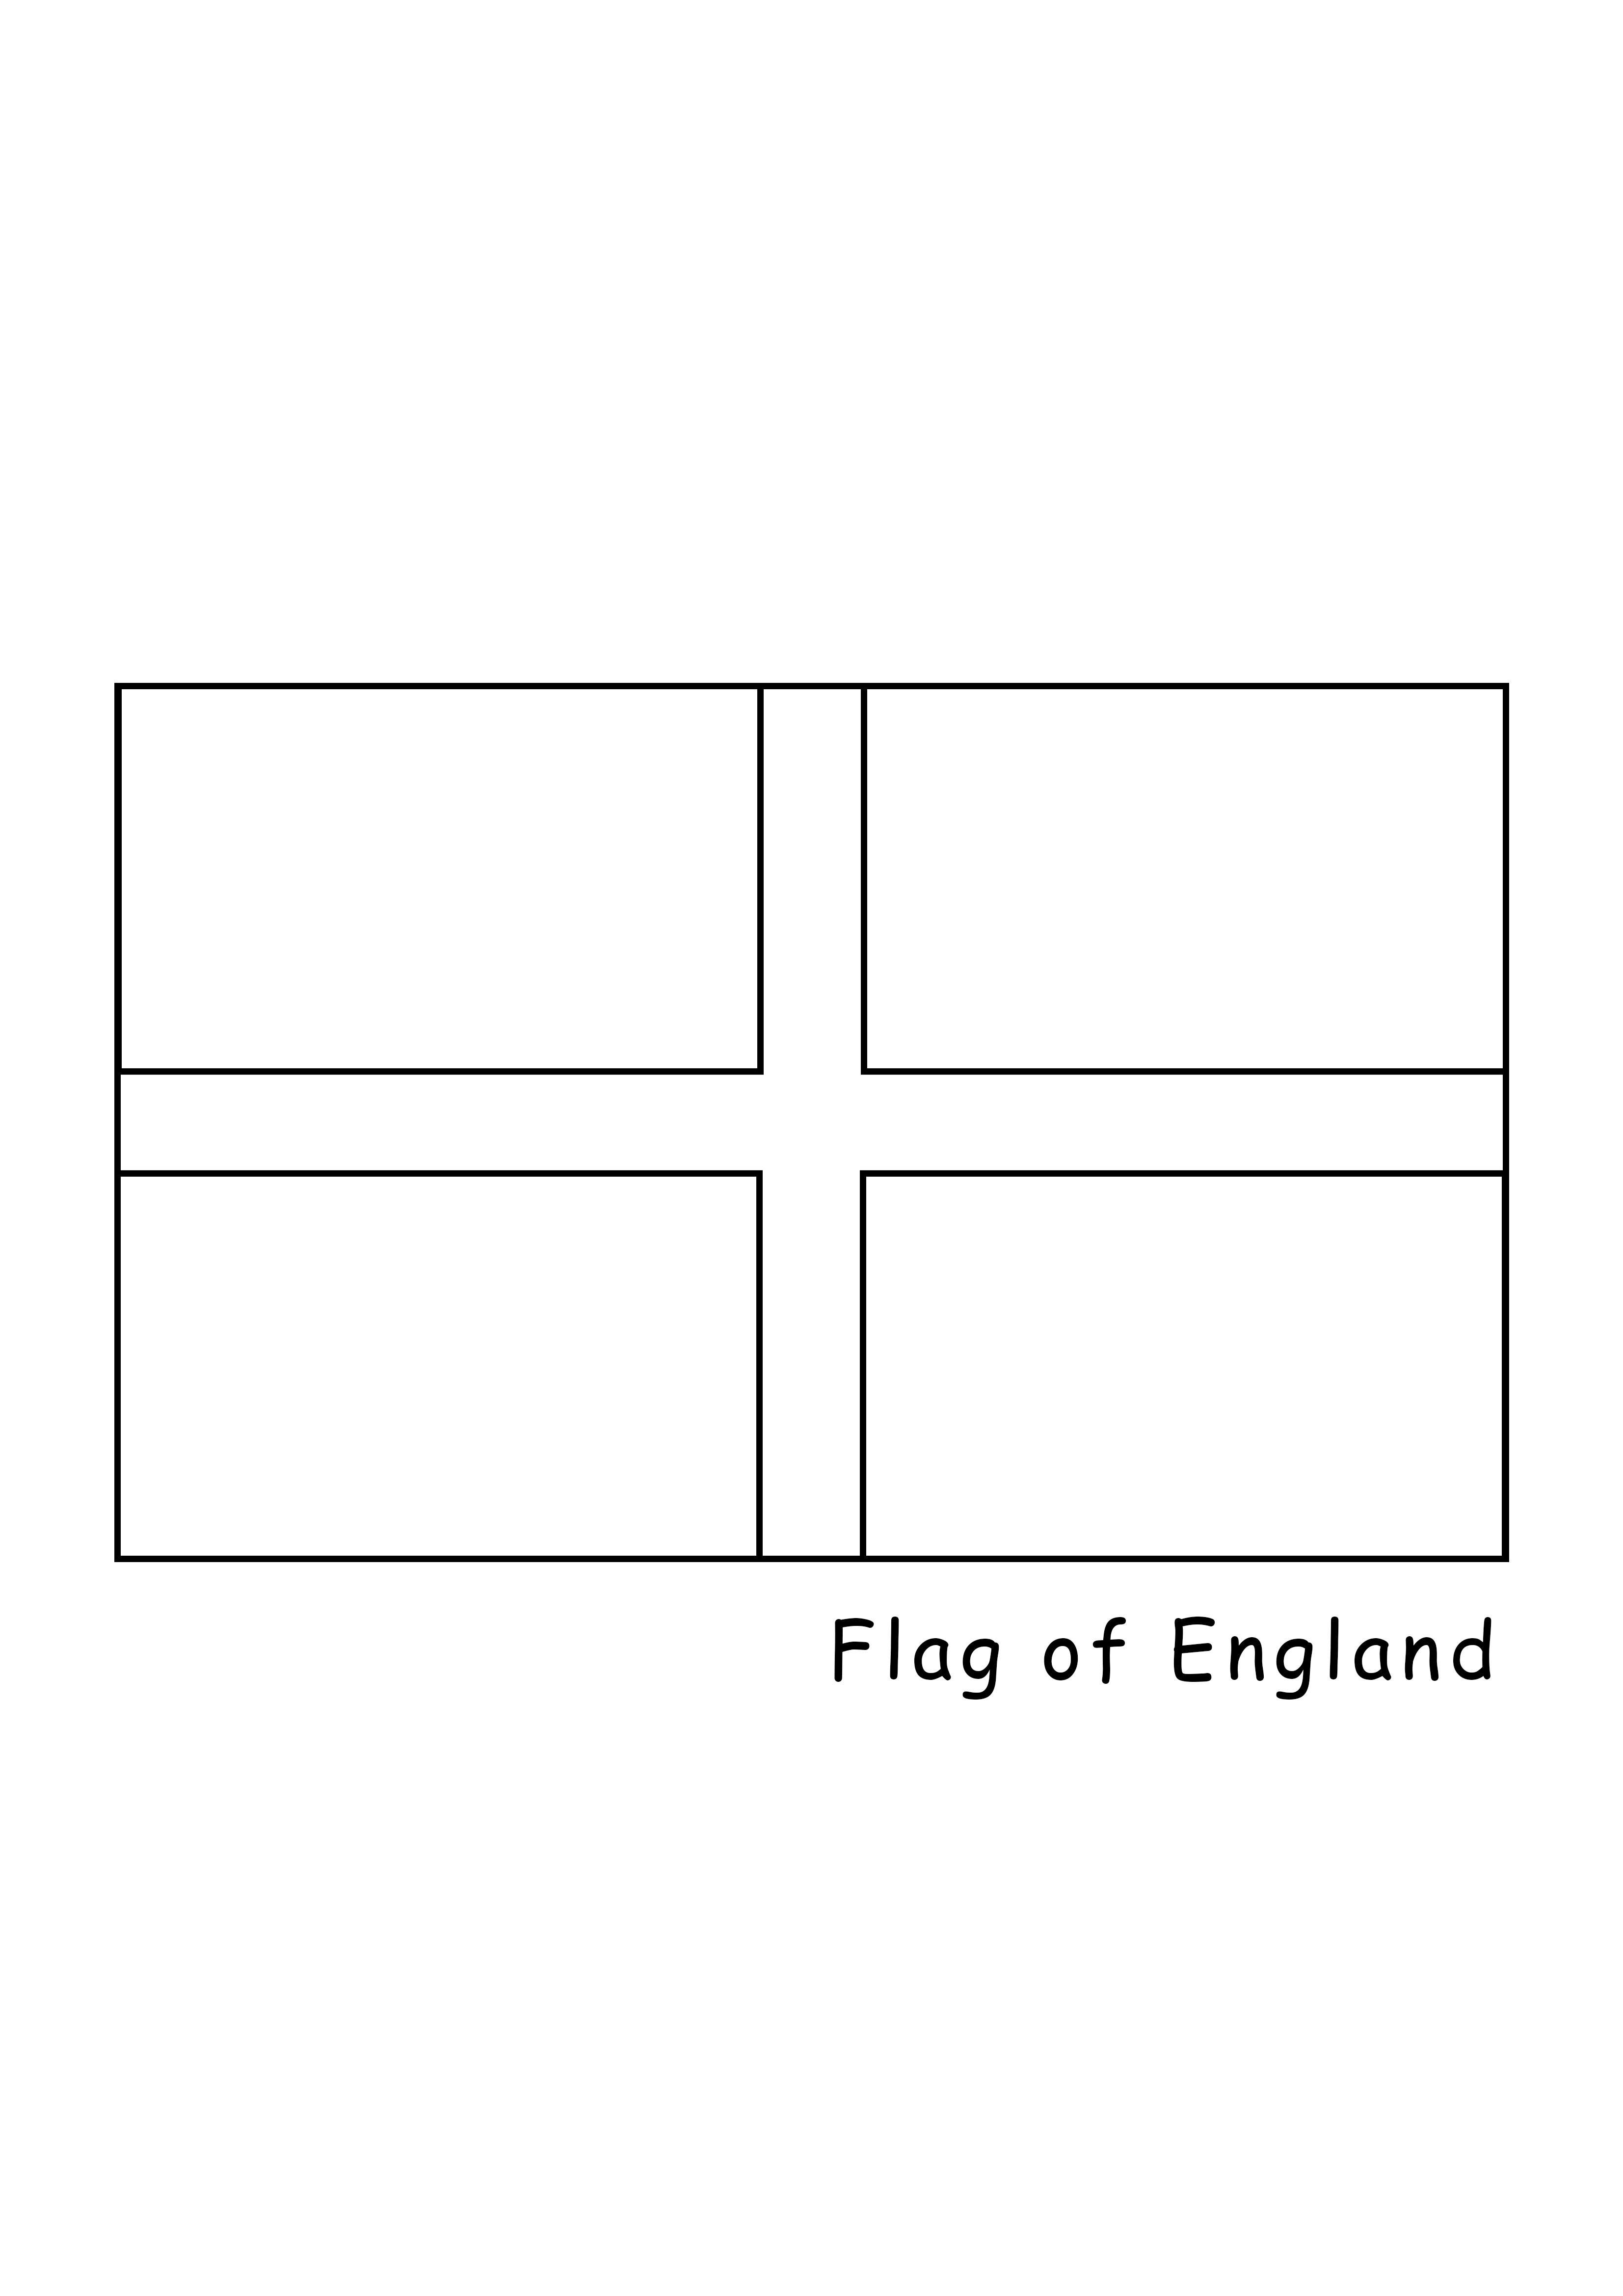 Bandera de Inglaterra para imprimir y colorear gratis